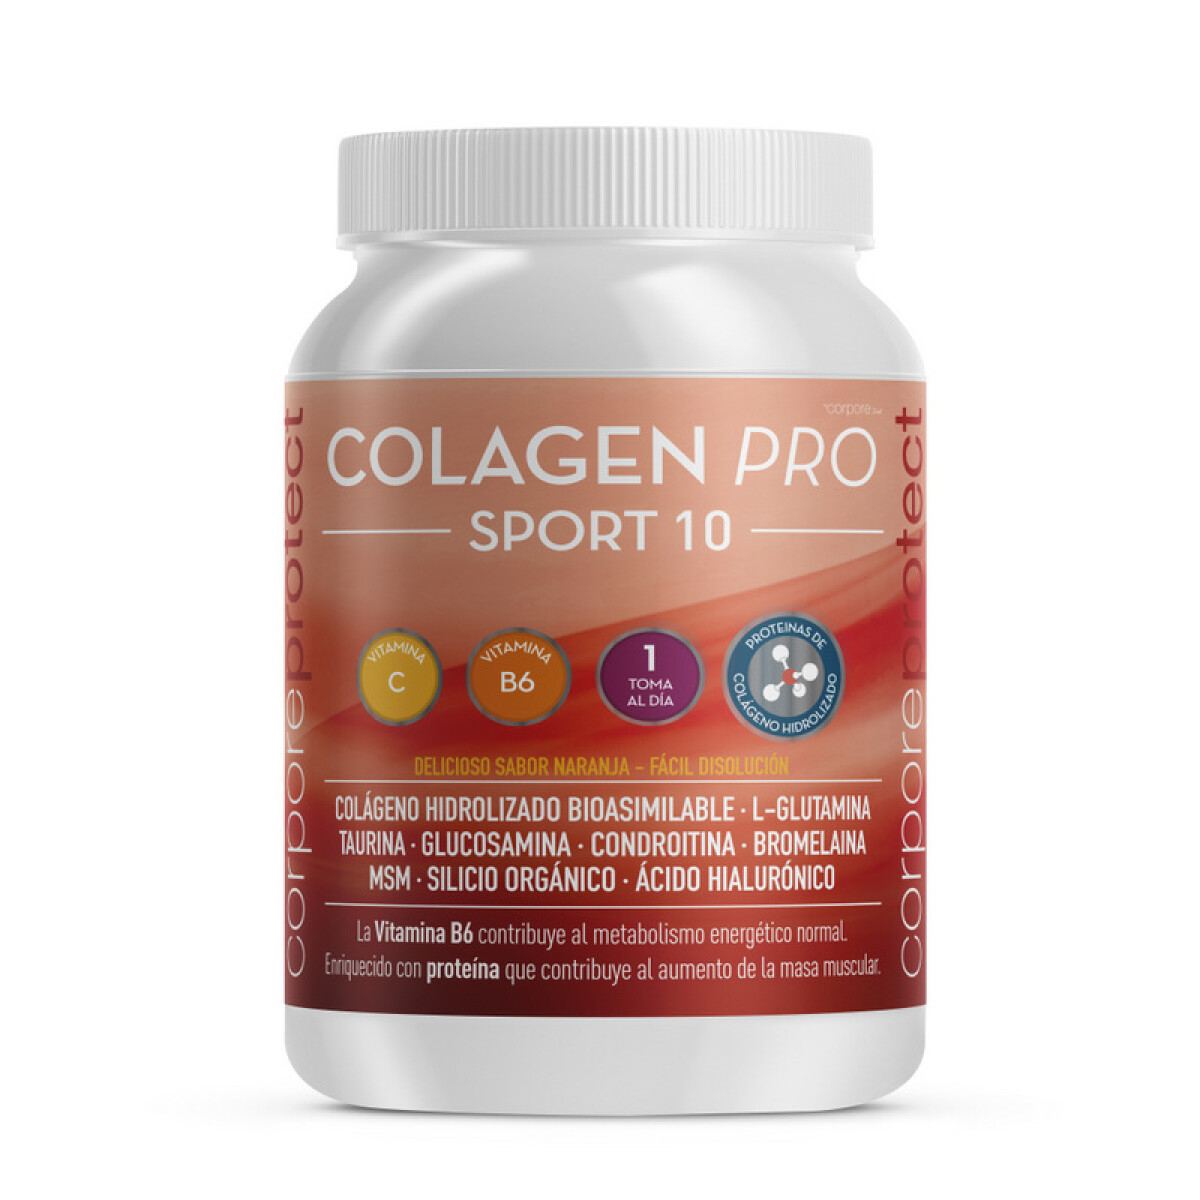 Colagen Pro SPORT 10 